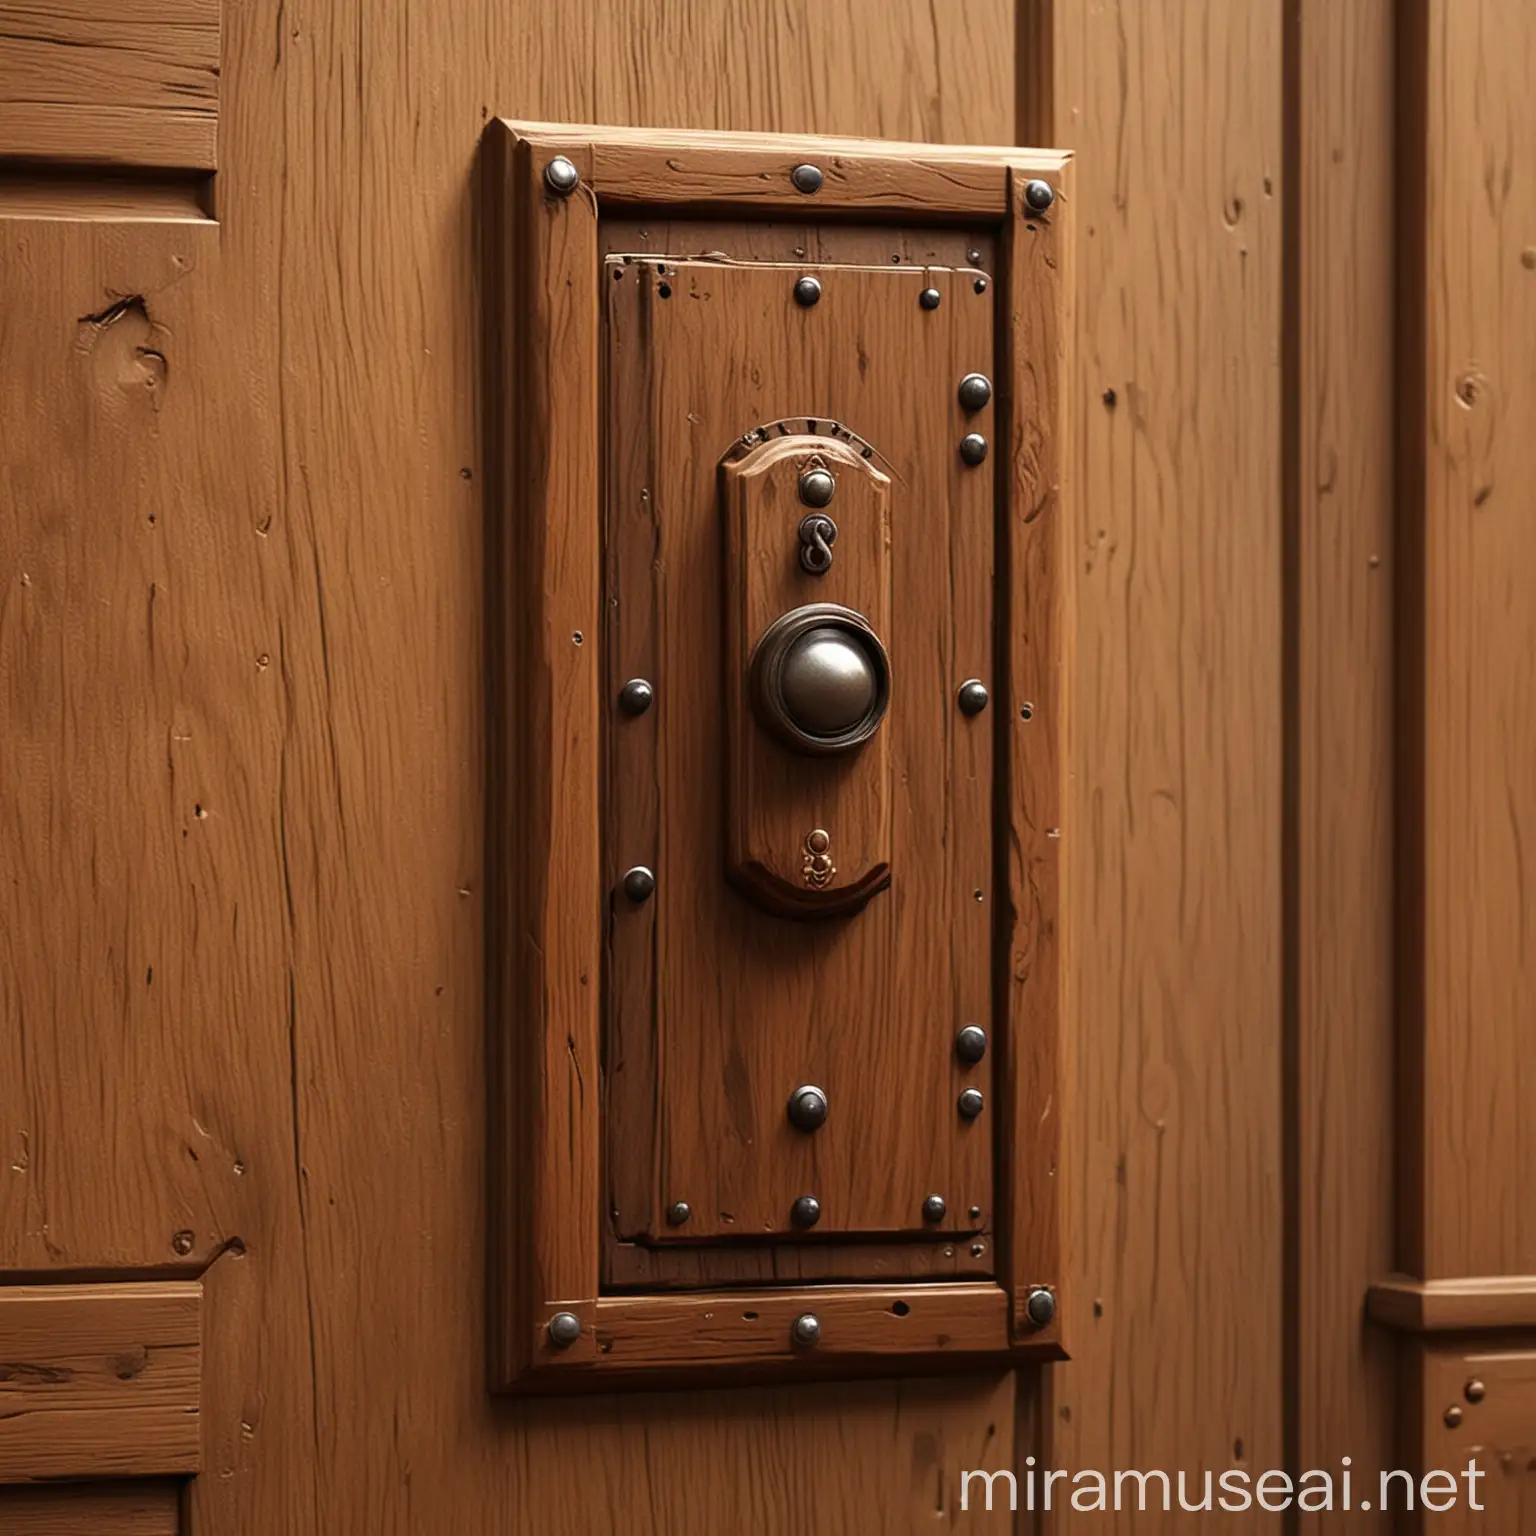 Castle wooden door switch，pixar style